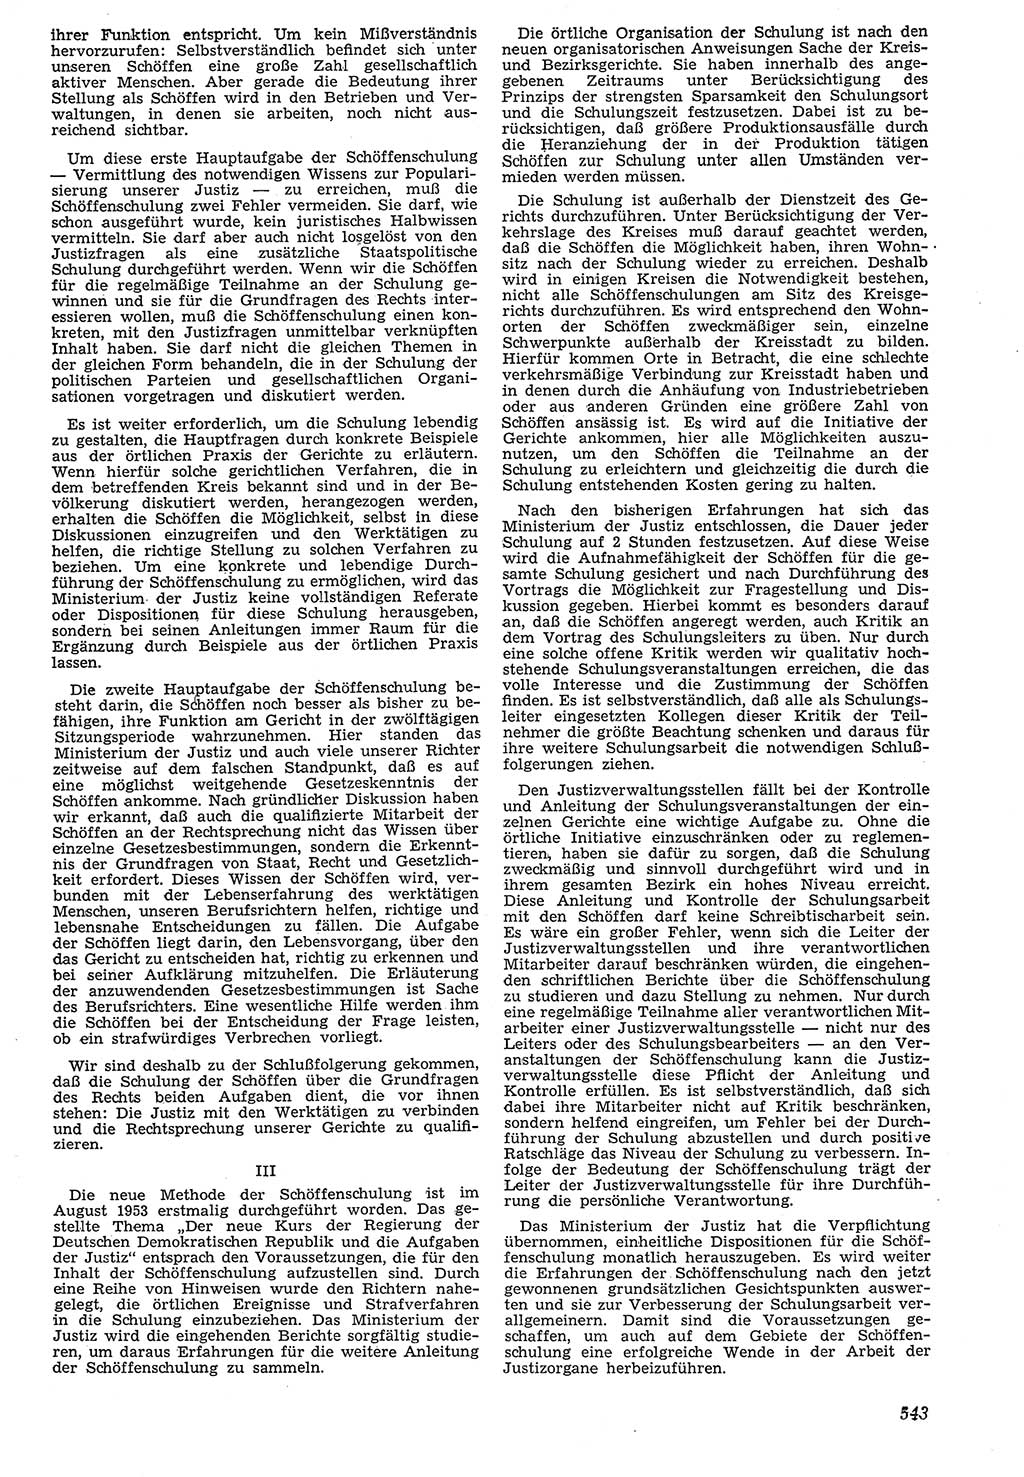 Neue Justiz (NJ), Zeitschrift für Recht und Rechtswissenschaft [Deutsche Demokratische Republik (DDR)], 7. Jahrgang 1953, Seite 543 (NJ DDR 1953, S. 543)